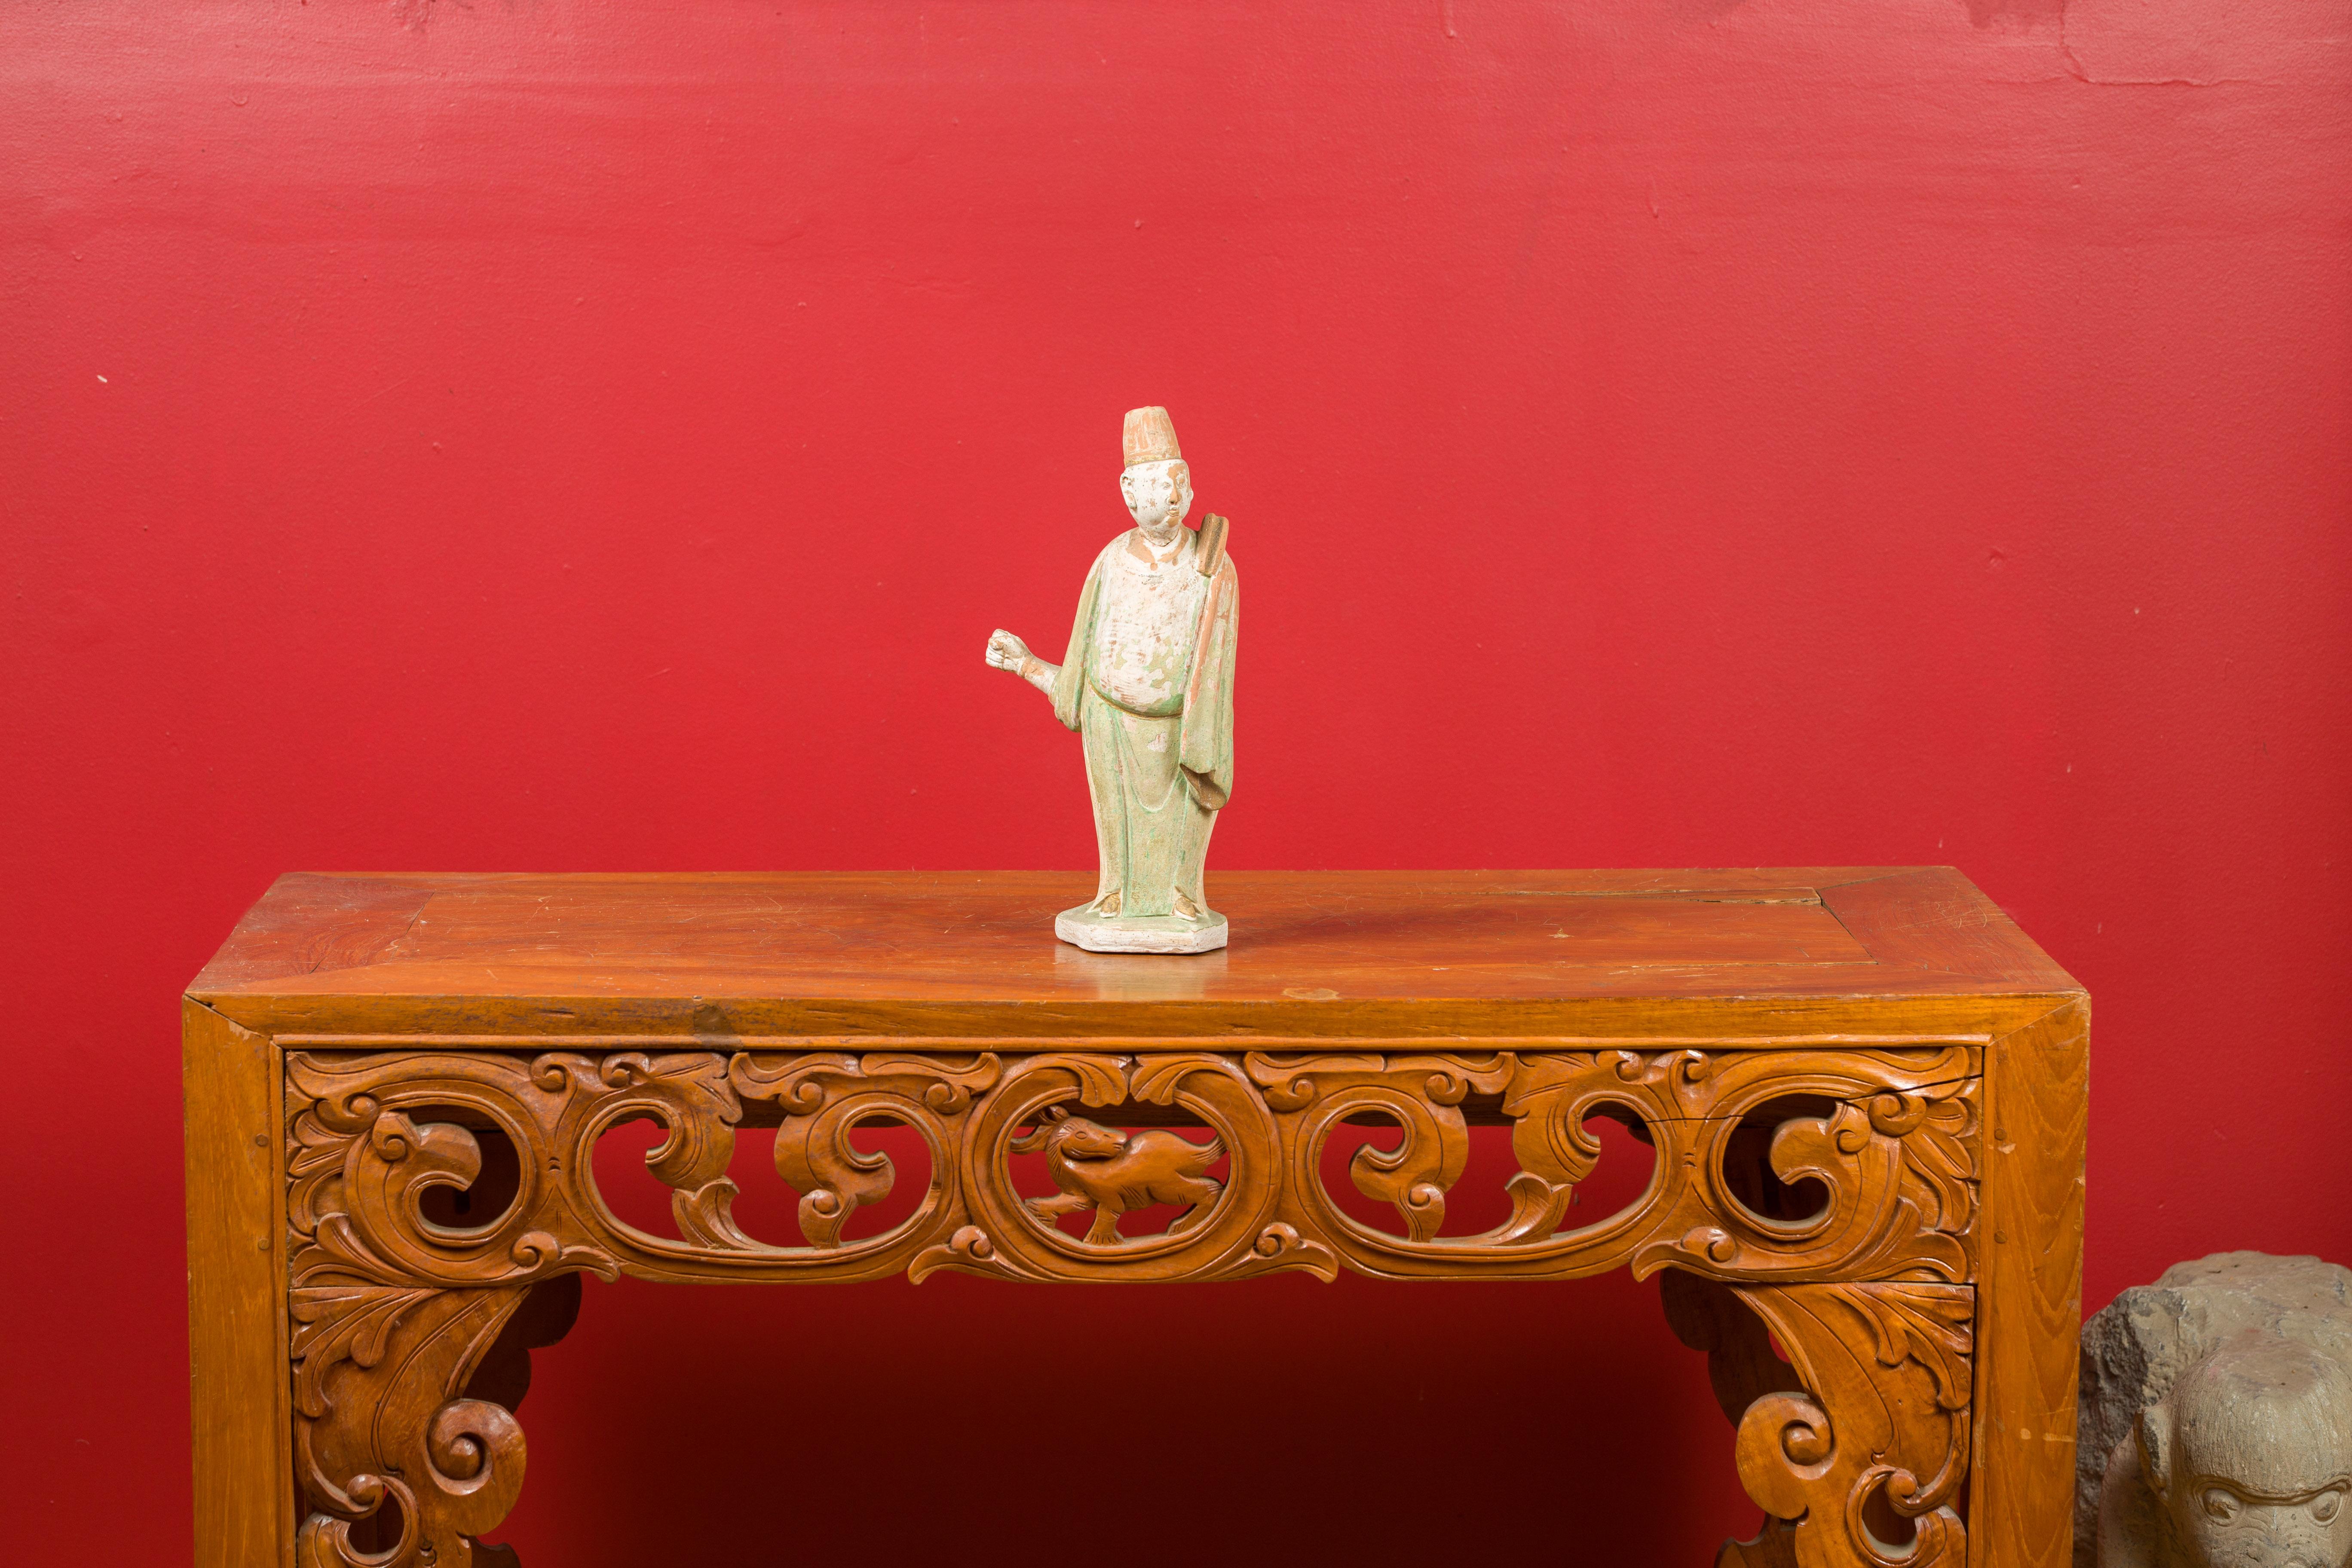 Eine bemalte Terrakotta-Figur aus der chinesischen Ming-Dynastie mit originaler Polychromie. Diese Ming-Statuette, die durch ihr verwittertes Aussehen und ihre subtile Polychromie besticht, zeigt einen Hofmann, der auf einem sechseckigen Sockel